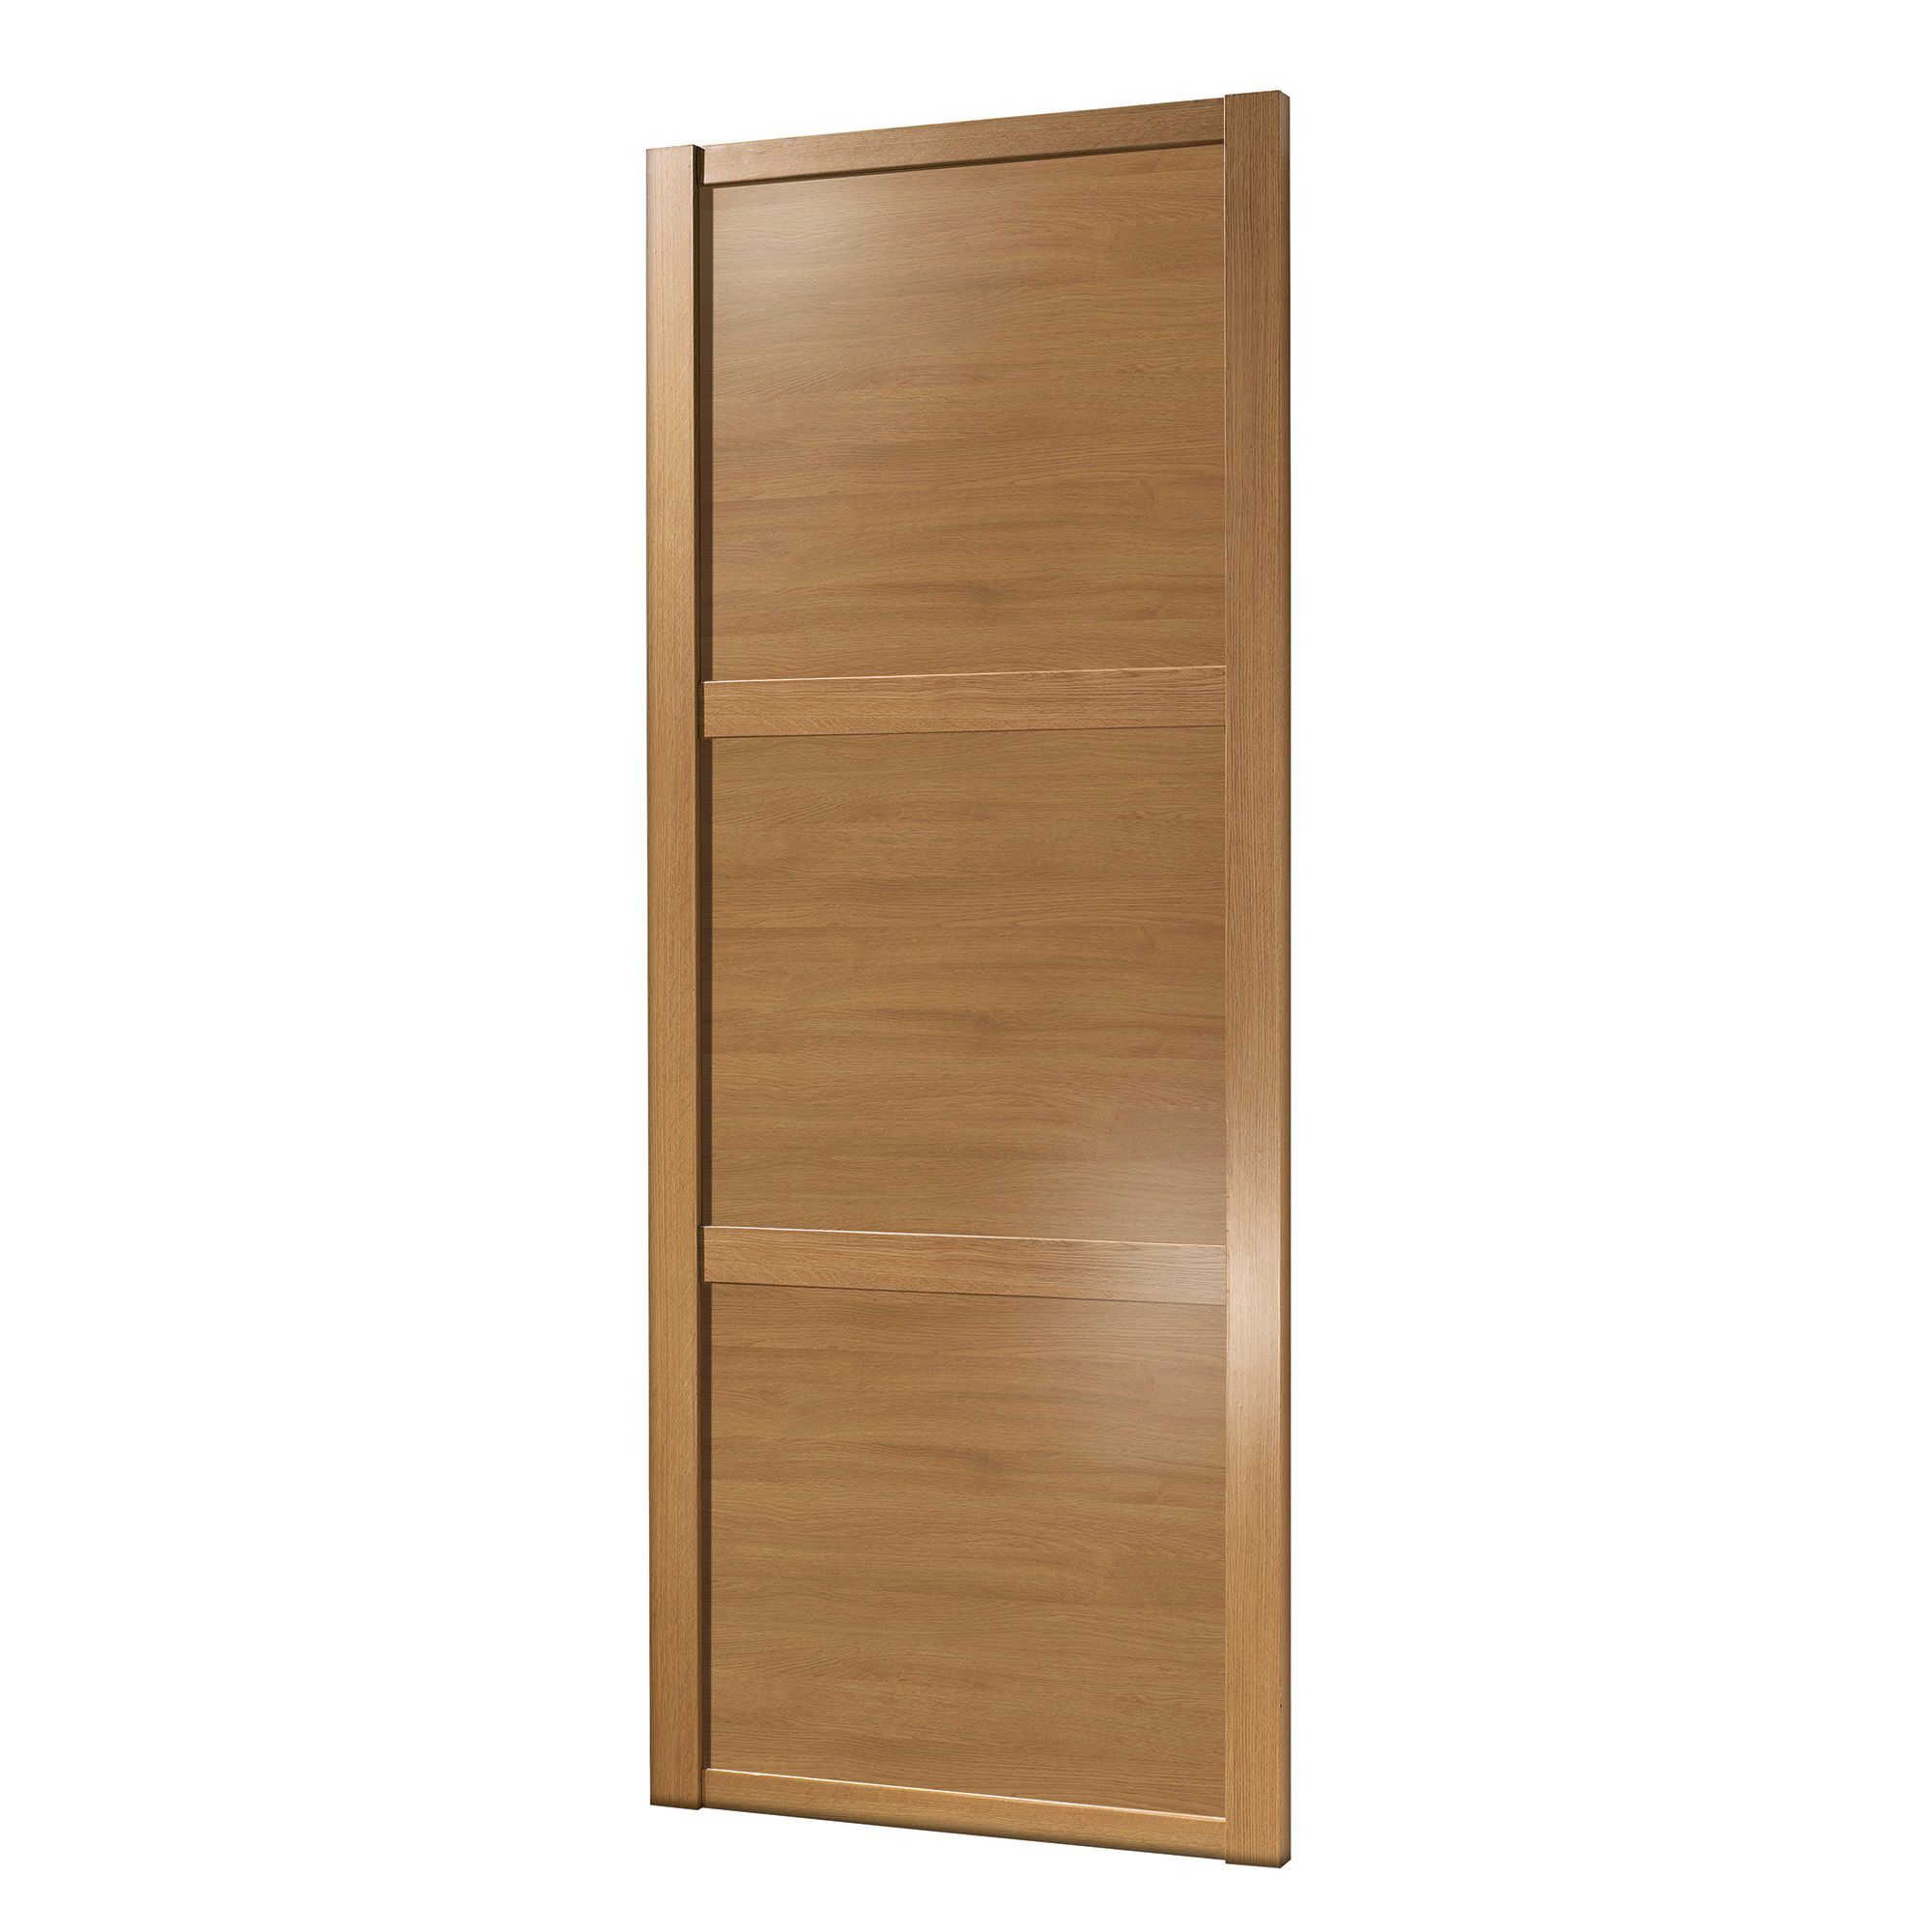 Spacepro Classic Shaker Oak effect Sliding wardrobe door (H) 2220mm x (W) 762mm